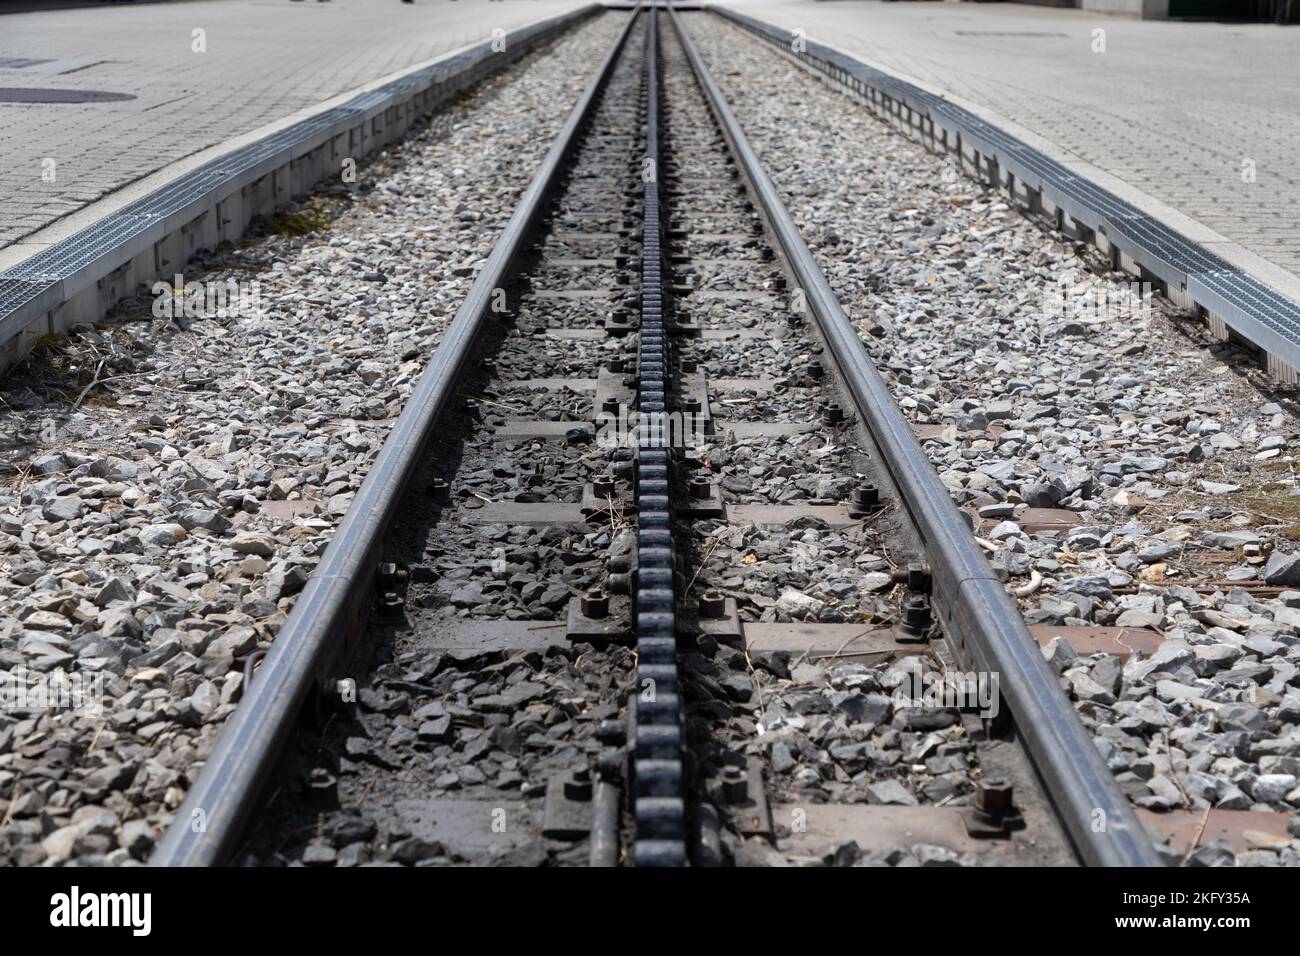 Selektiver Fokus, abnehmende Perspektive Bahngleise mit einer mittleren dritten Zahnradbahn, um die Züge an einem steilen Hang hochzuziehen. Stockfoto